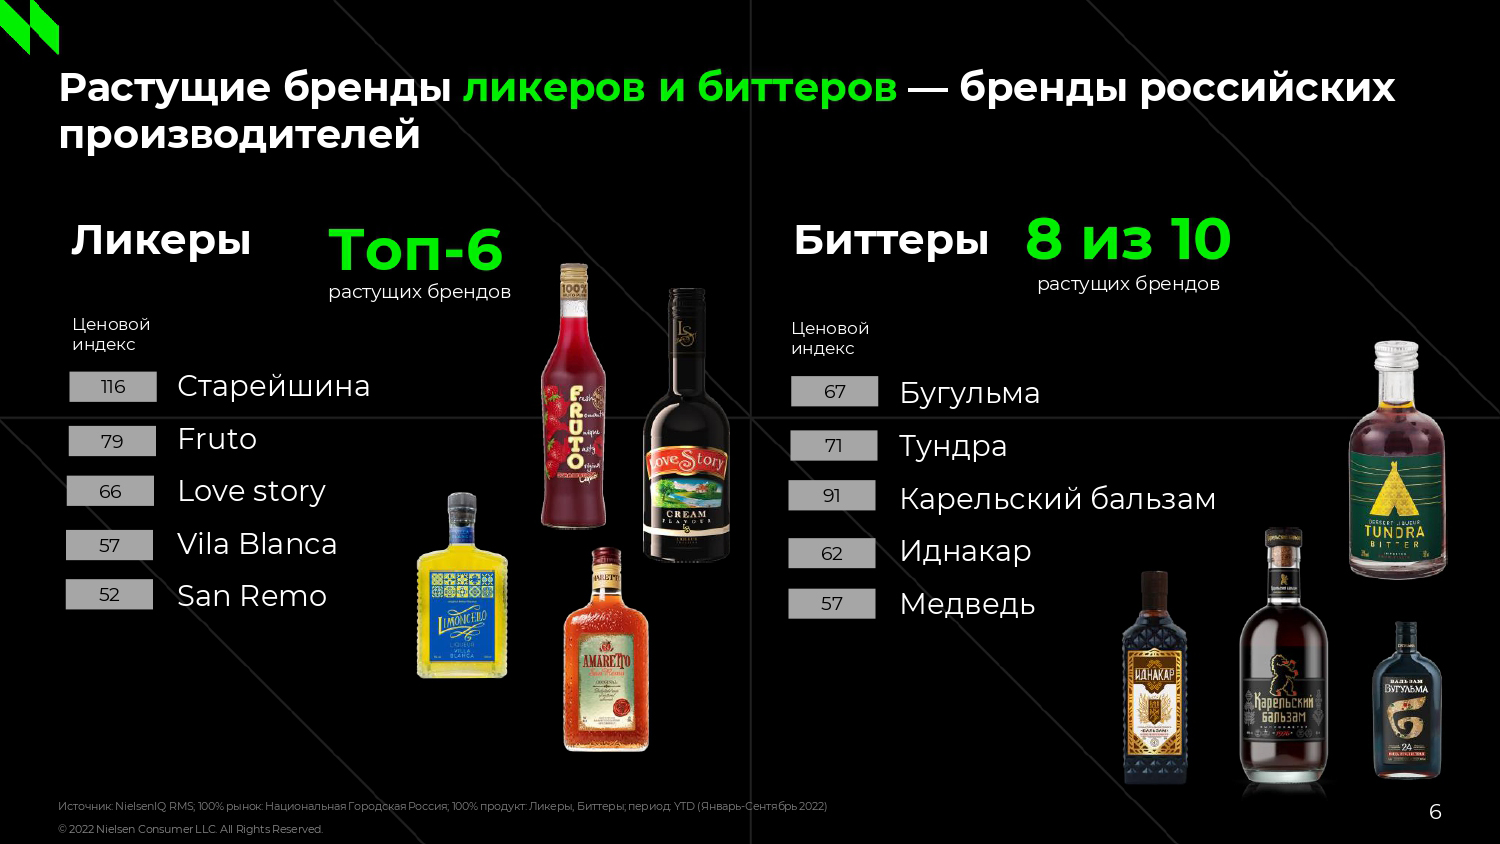 Российские бренды алкогольных новинок резко наращивают долю в структуре продаж | Анализ рынков